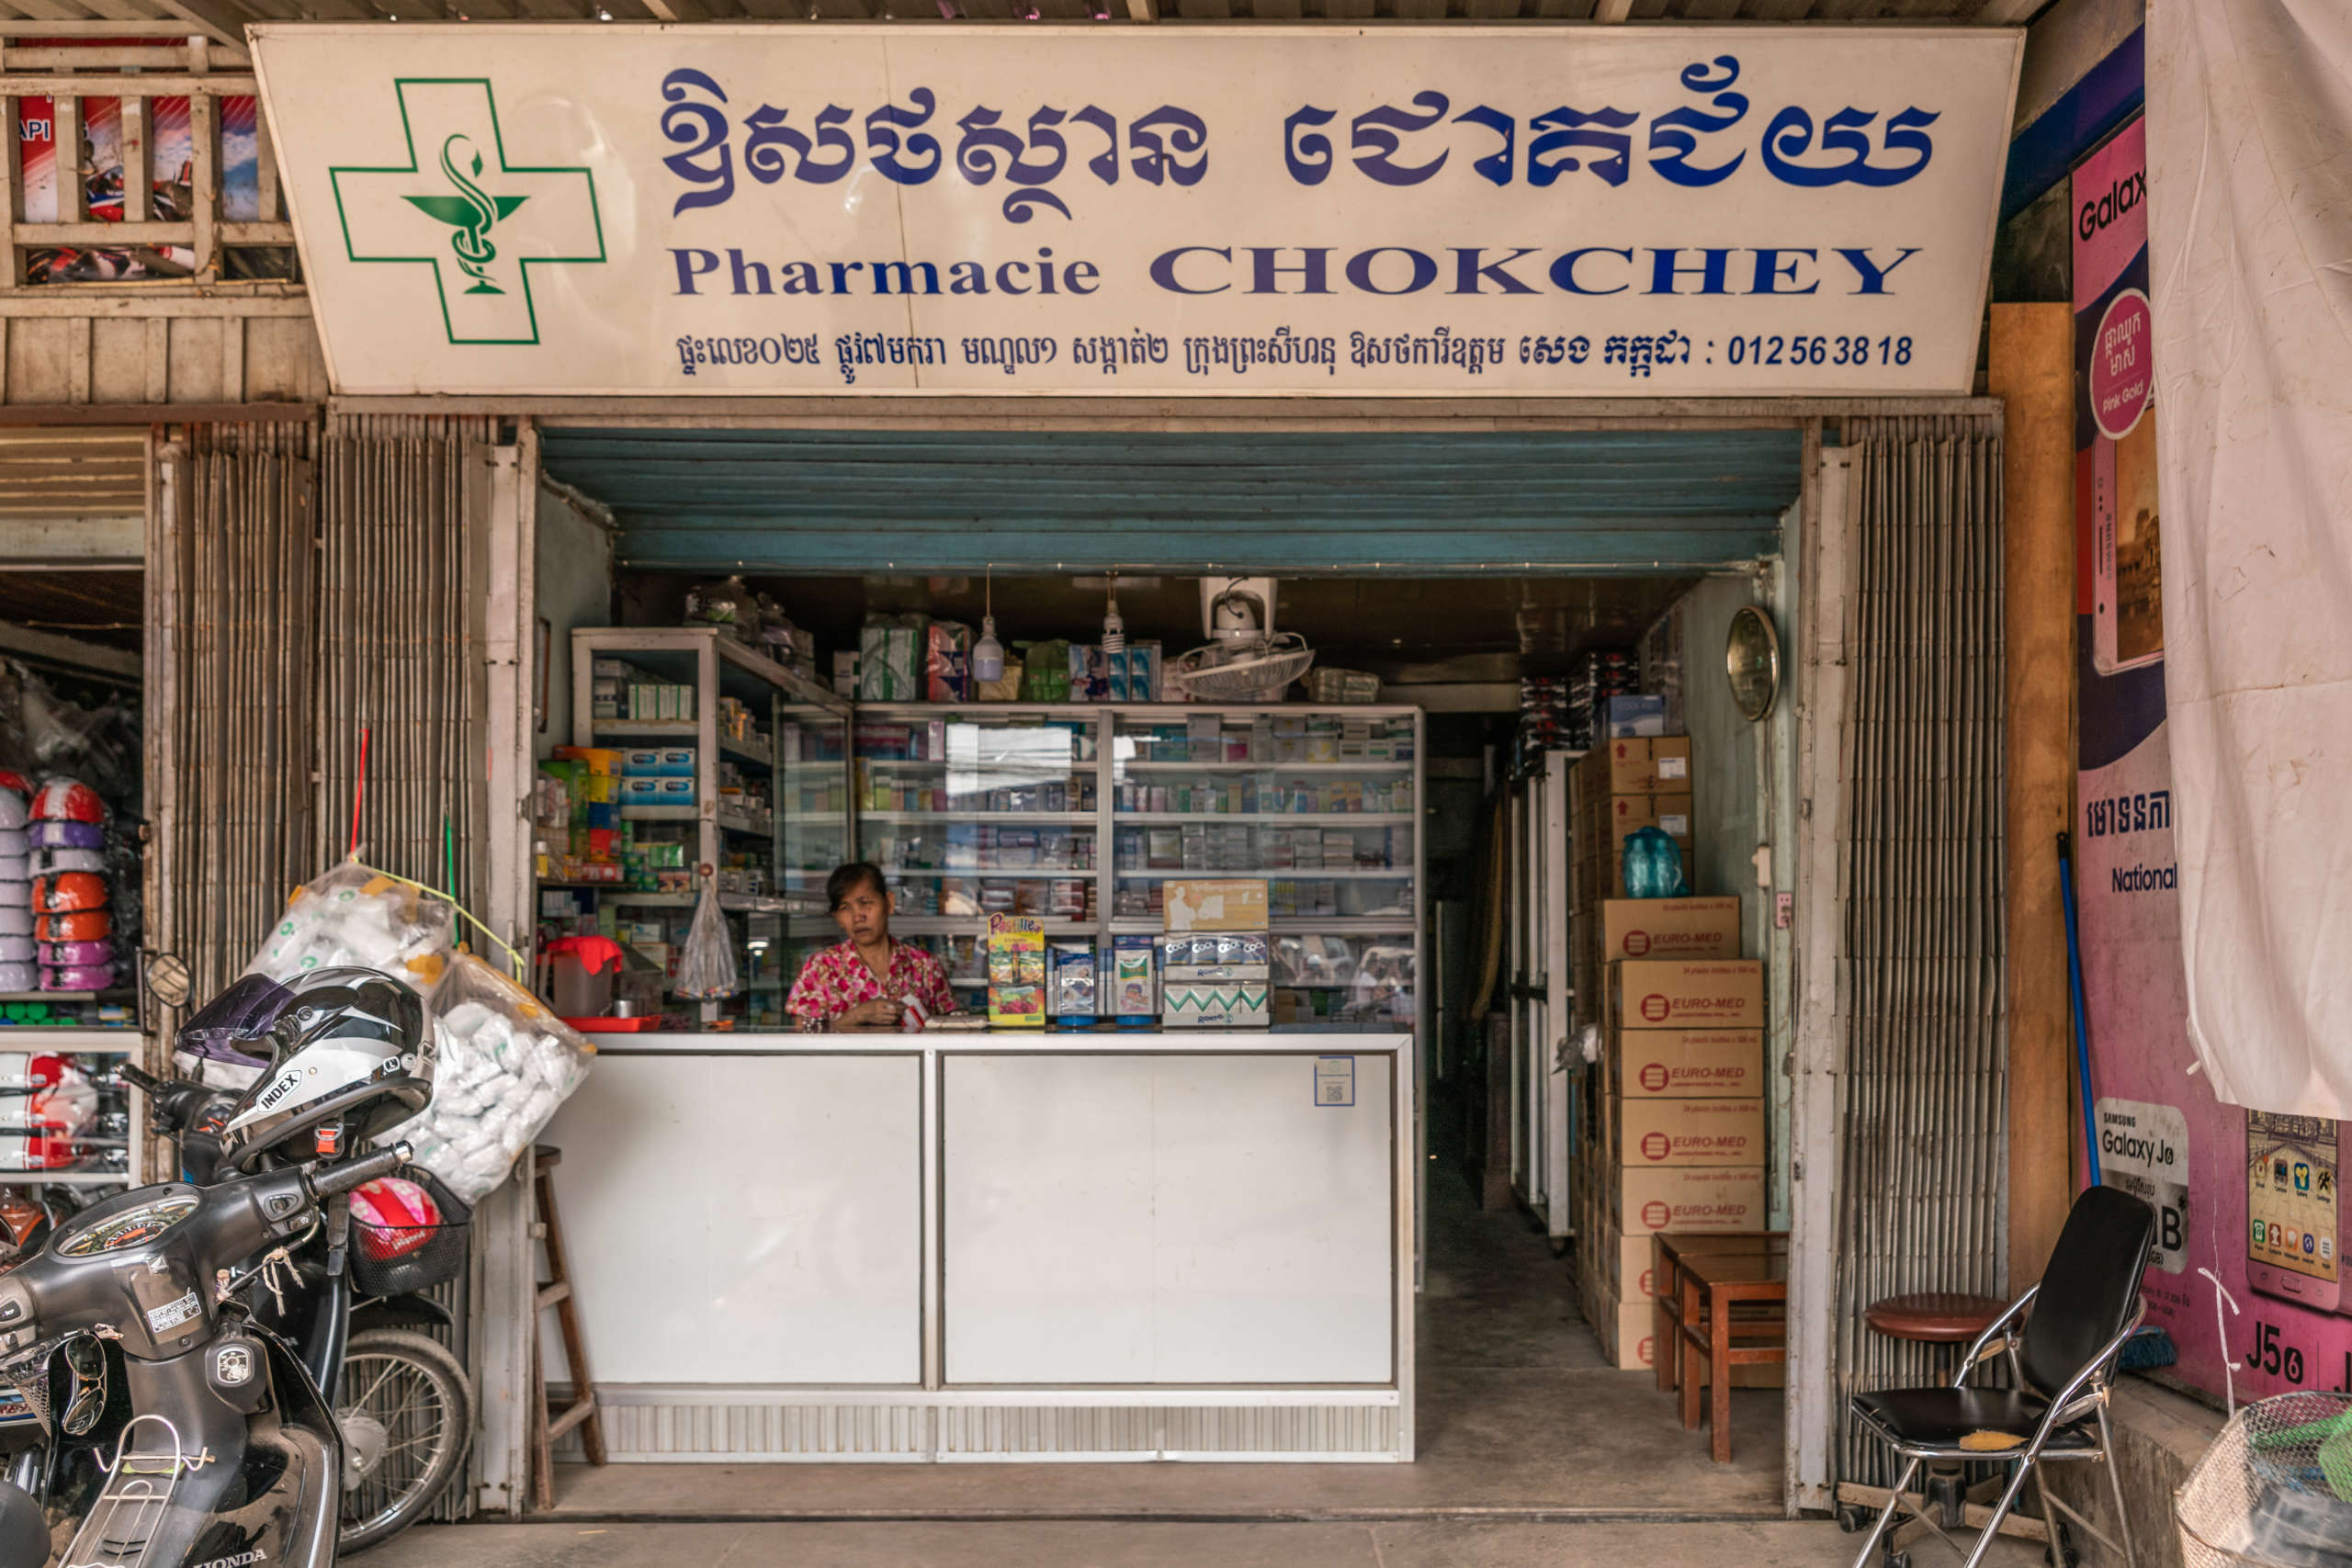 Eine Frau steht hinter einem Apothekentresen eines offenen Geschäfts mit Apothekenzeichen und der Aufschrift "Pharmacie Chokchey"